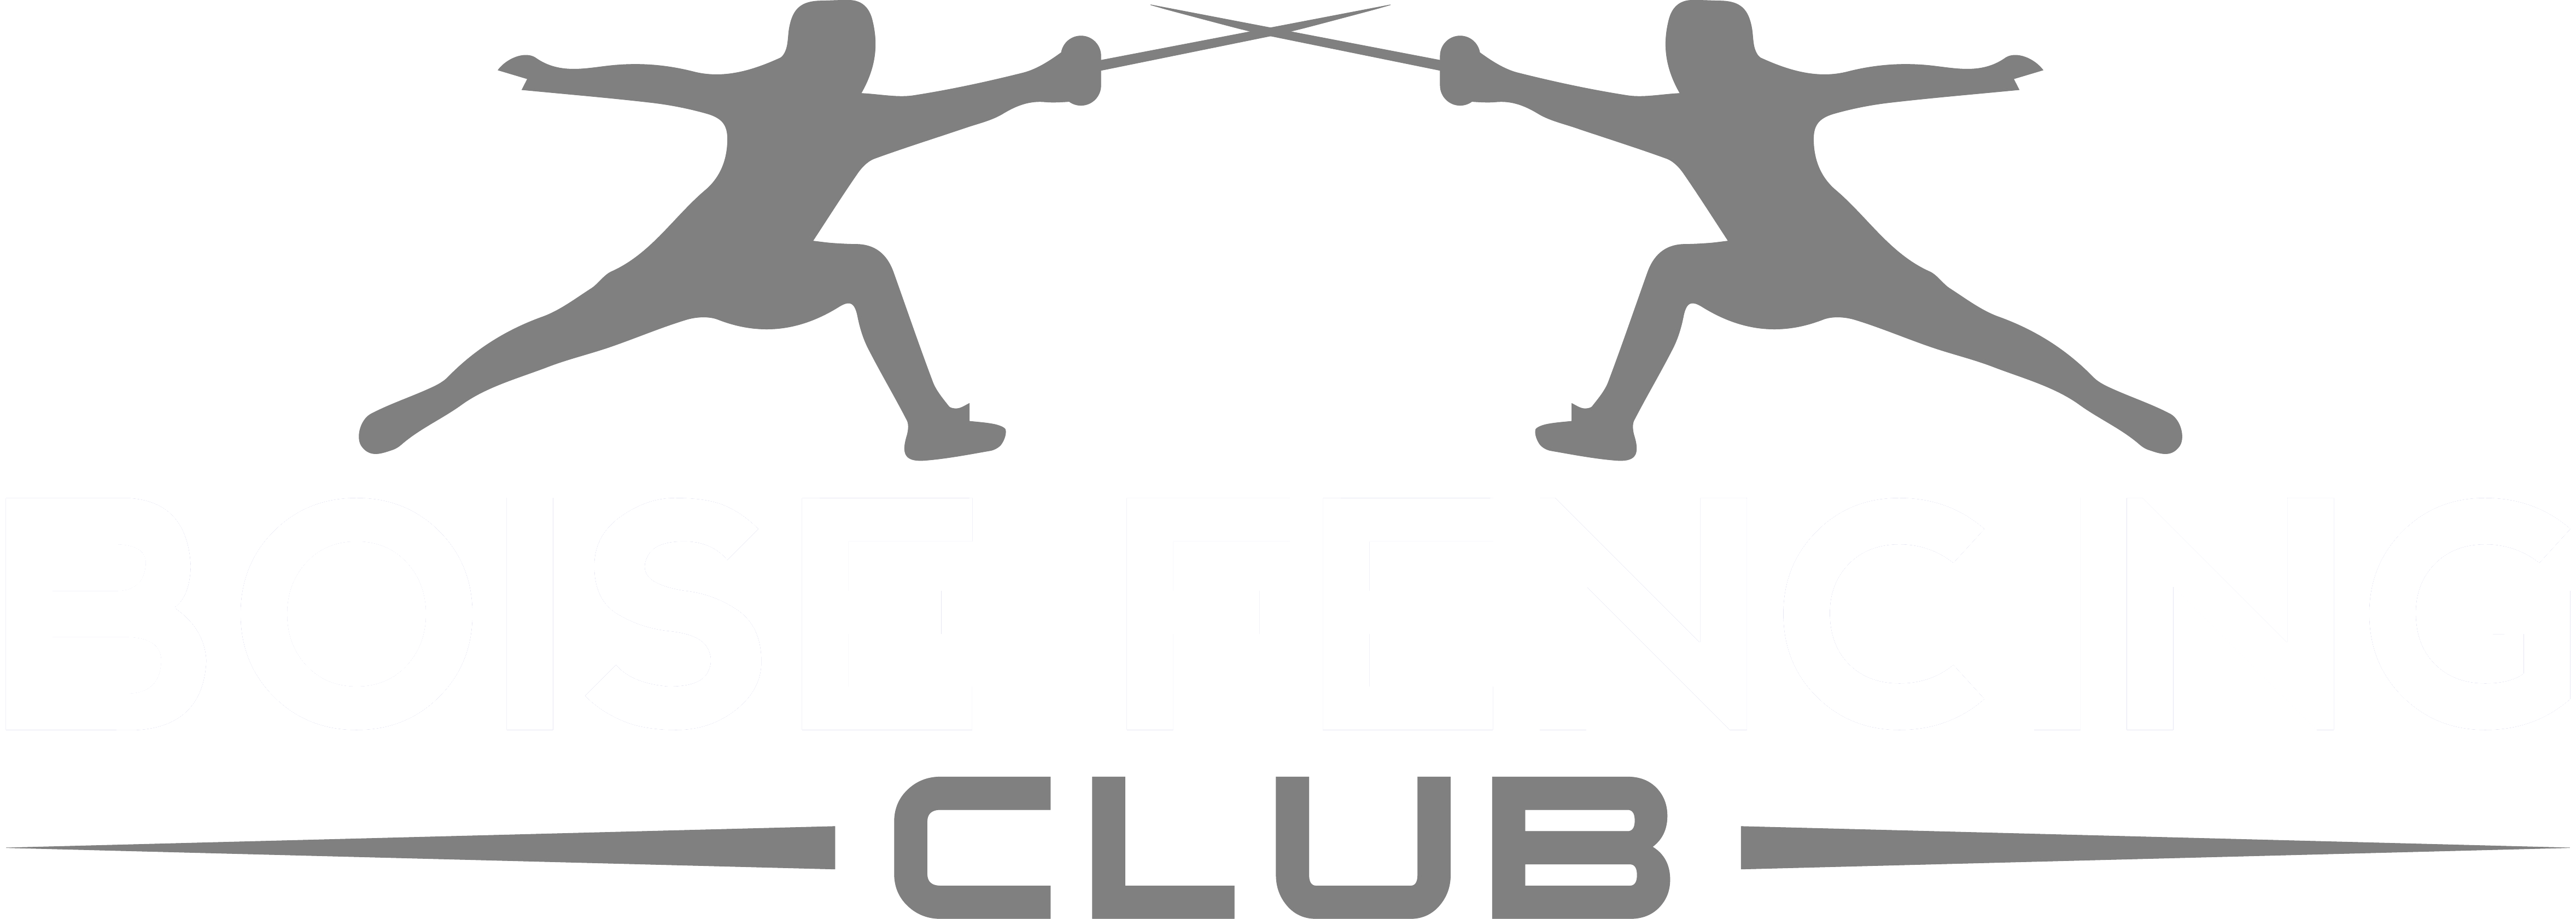 Fencing Logo - BoiseFencing